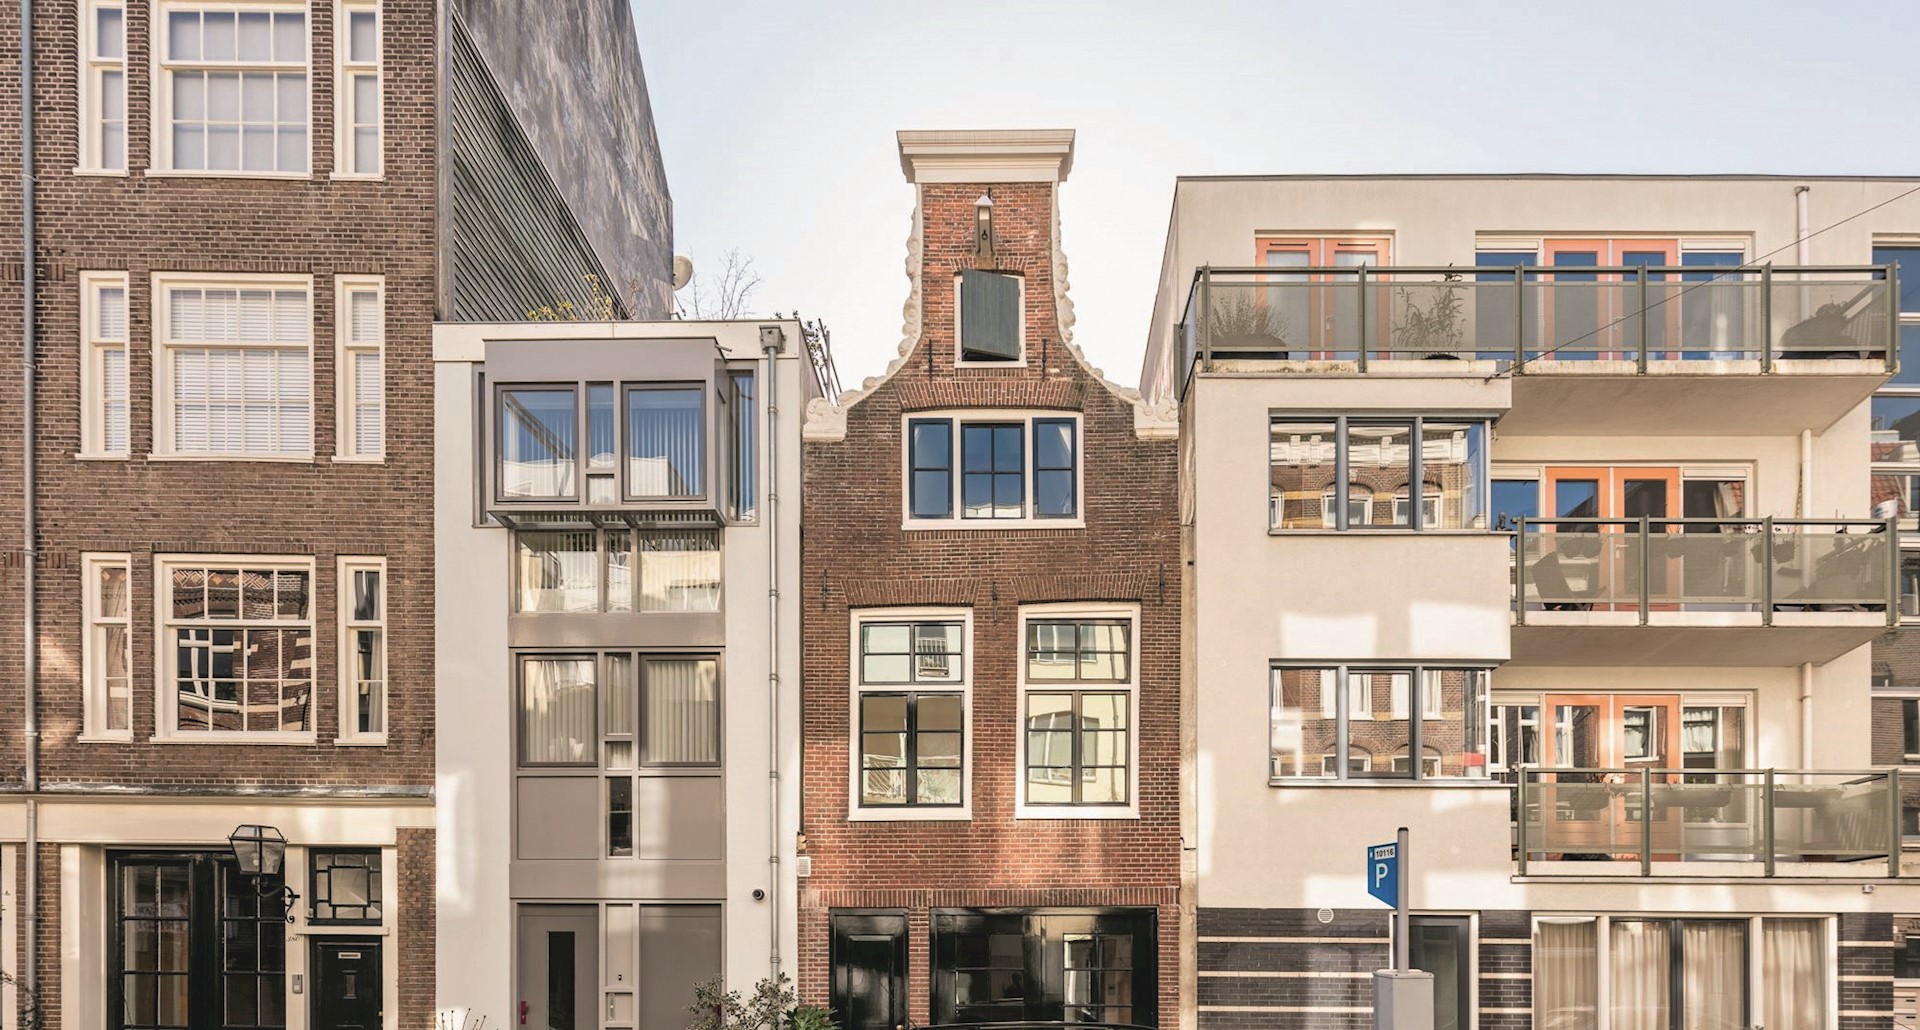 Belachelijk roman Menselijk ras Huis kopen in Amsterdam? Deze parels staan er nu te koop